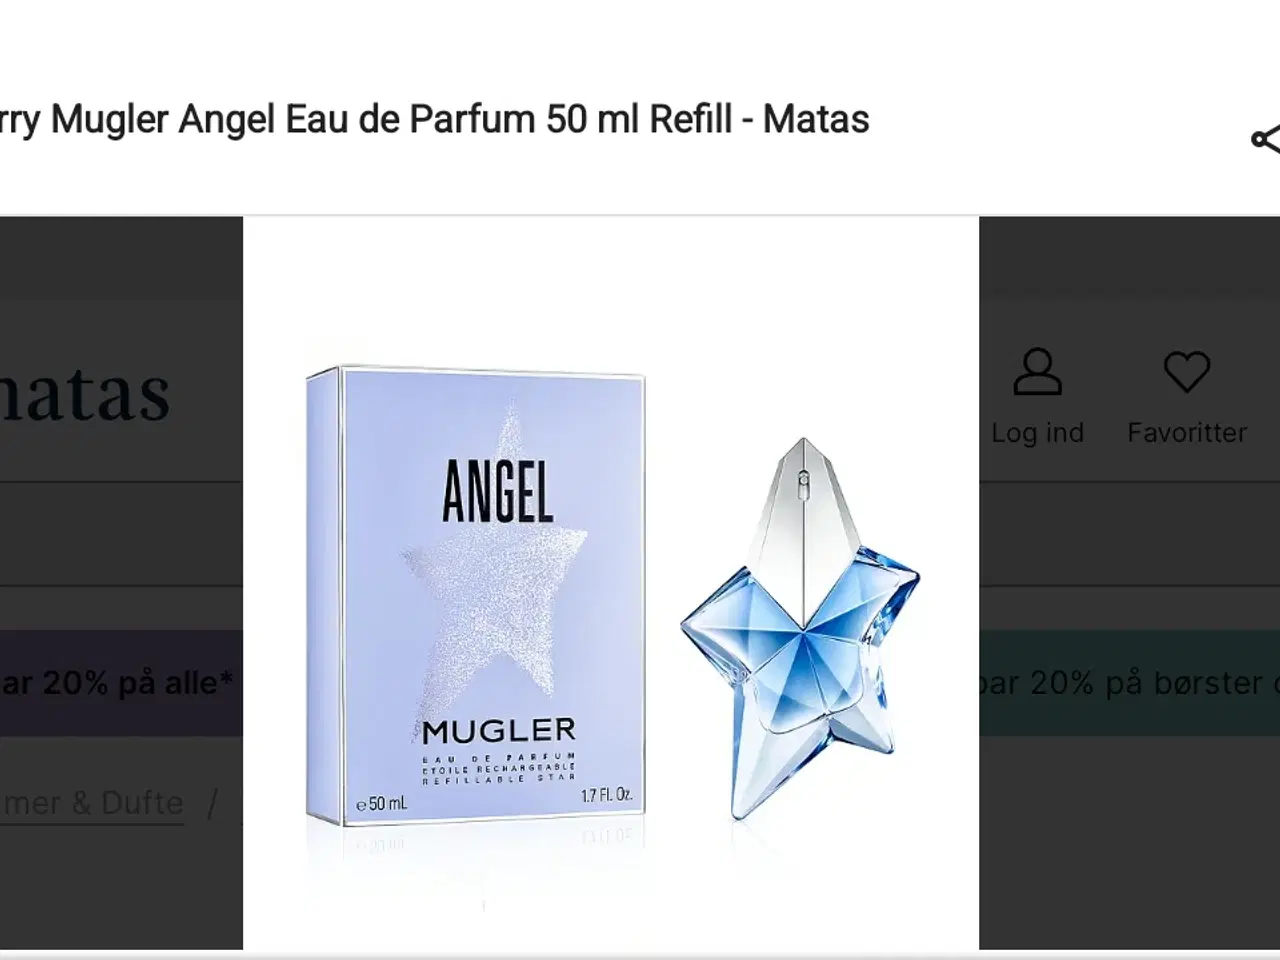 Billede 1 - Parafume Angel fra mugler